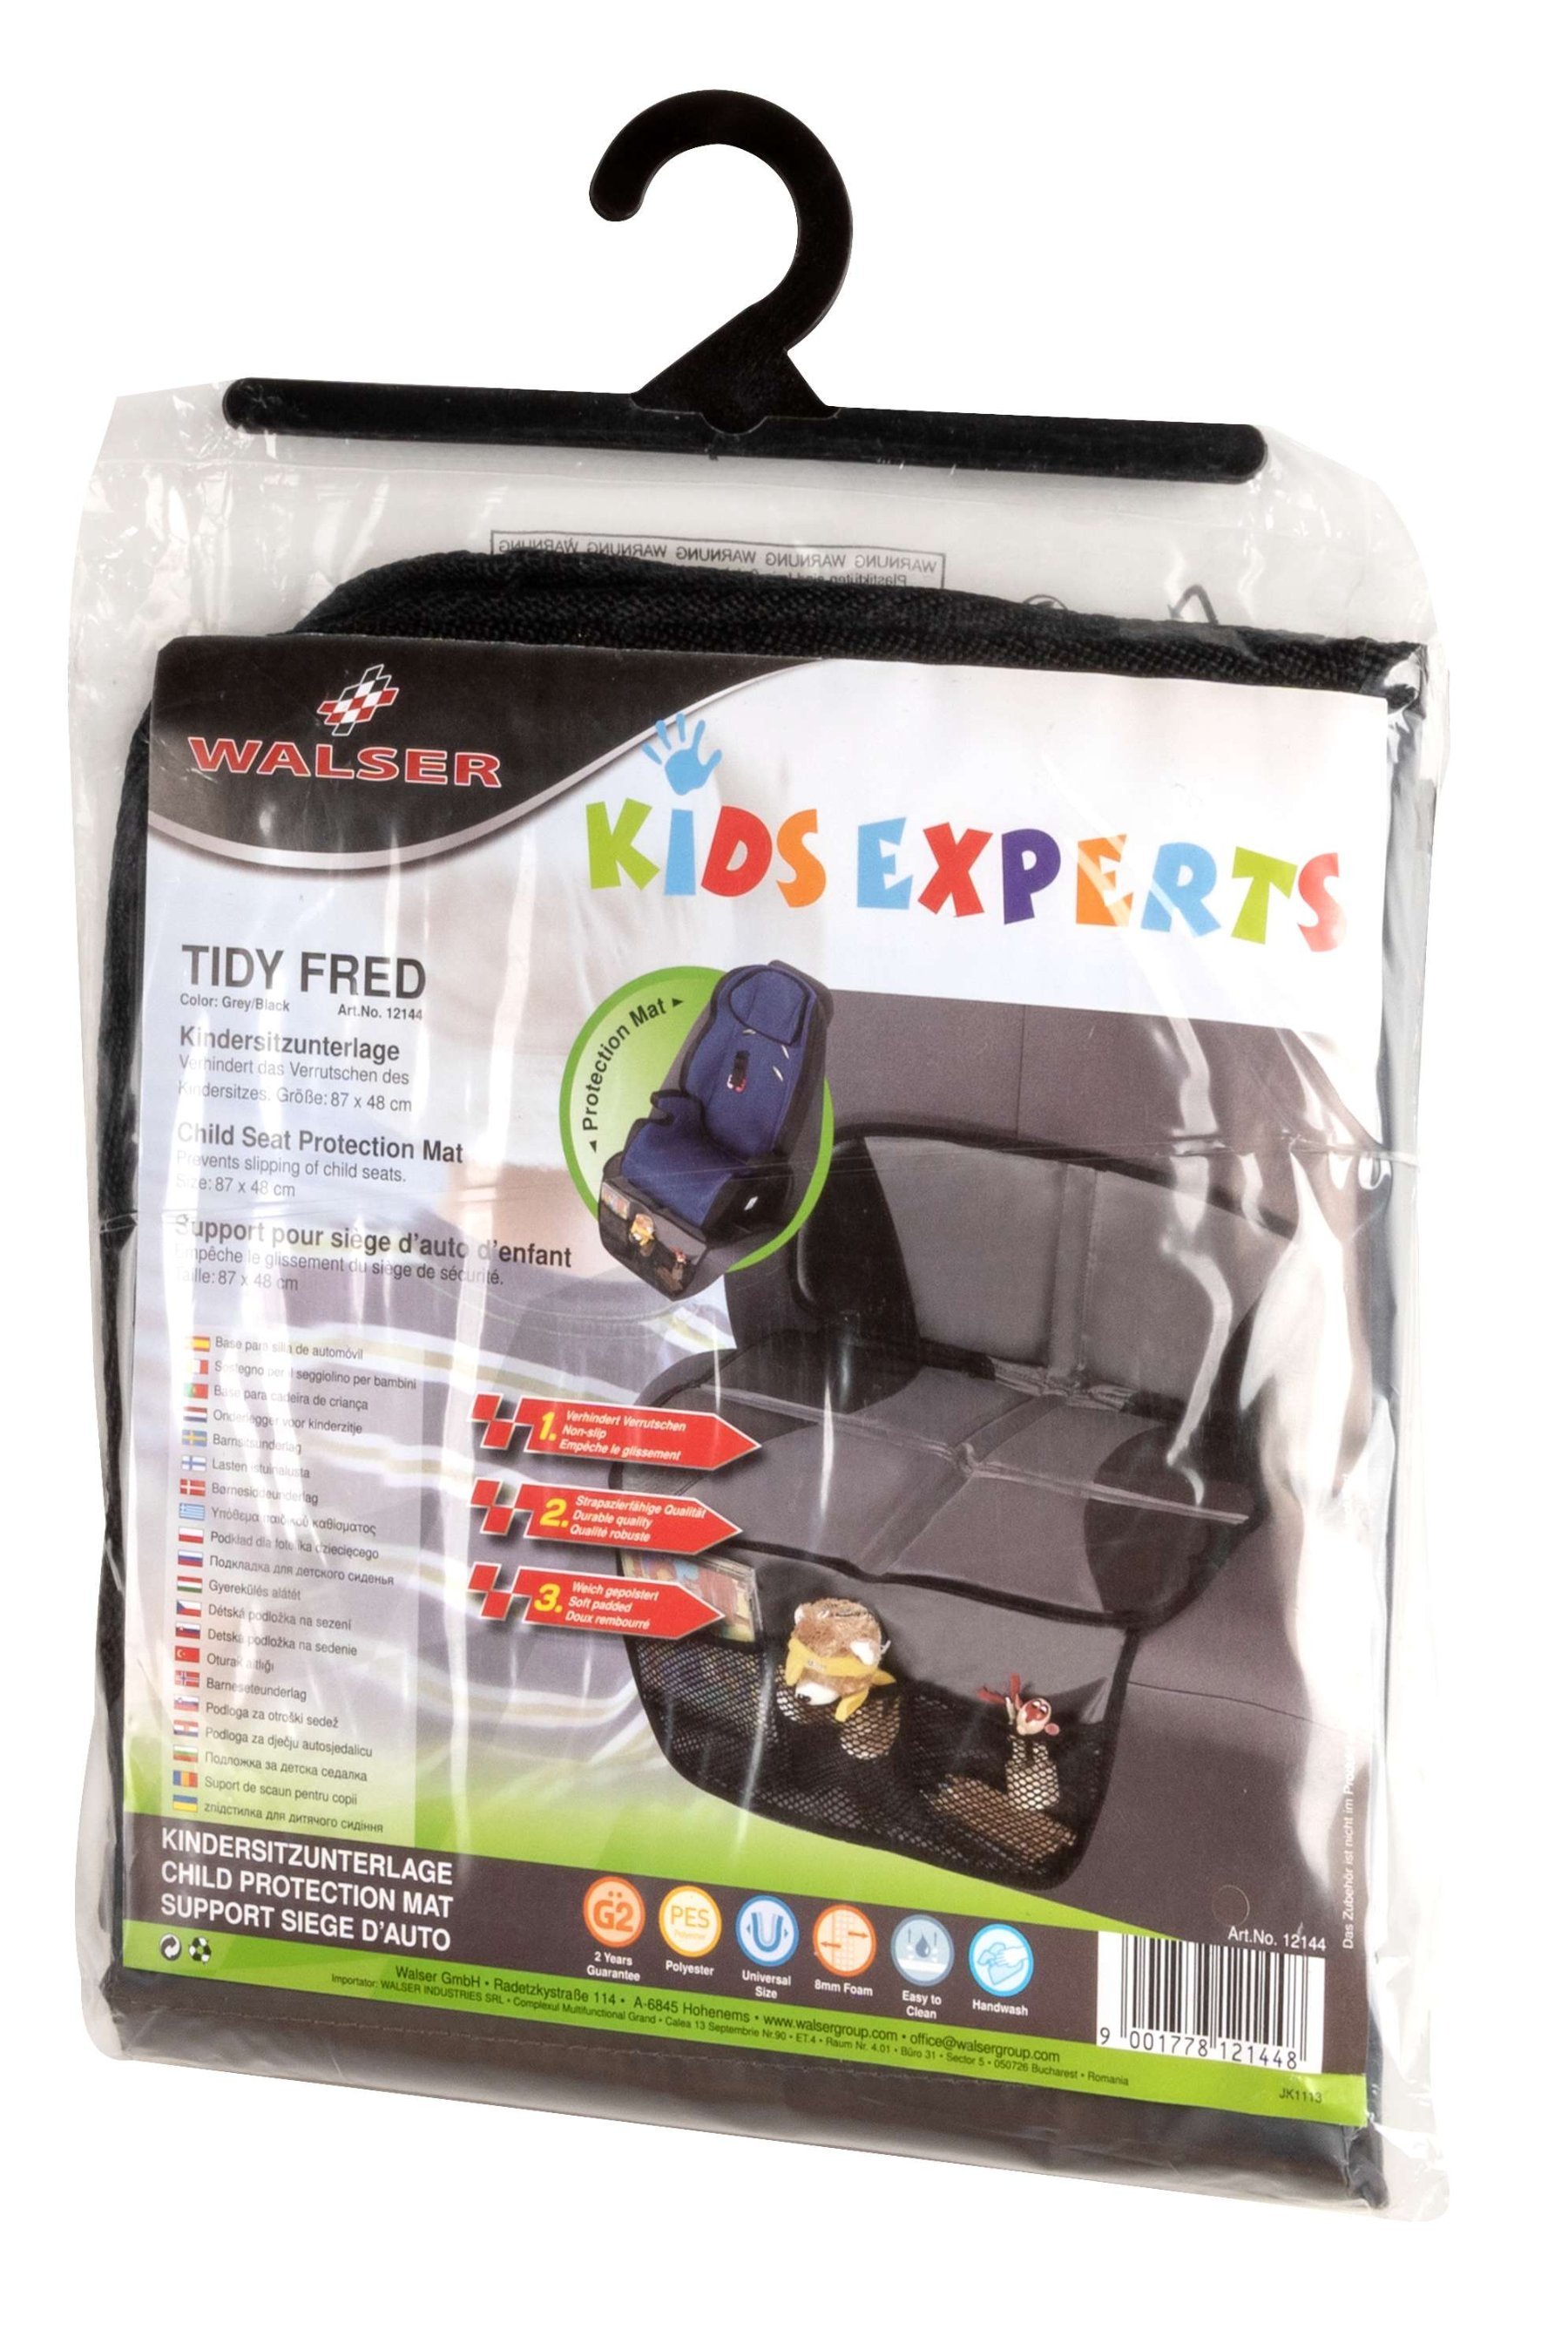 Coussin pour siège enfant Tidy Fred, tapis de protection pour siège enfant gris/noir